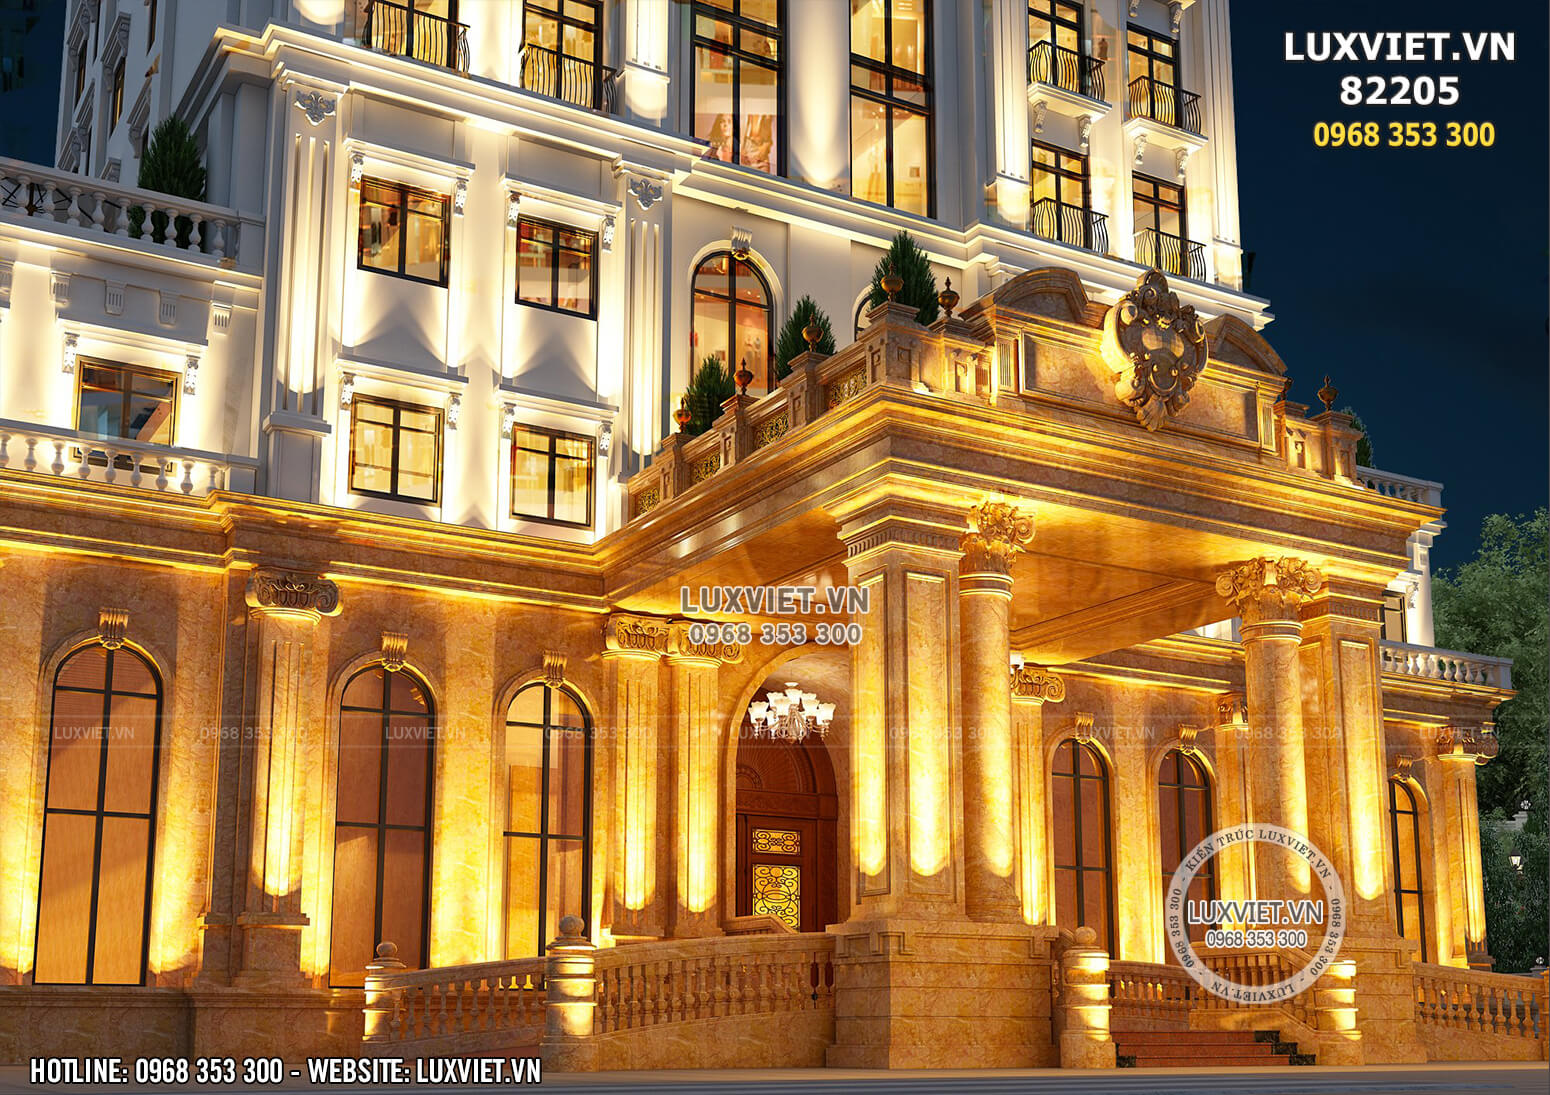 Hình ảnh: Chiêm ngưỡng mặt tiền nổi bật và lộng lẫy của mẫu khách sạn 3 sao tại Quảng Ninh - LV 82205